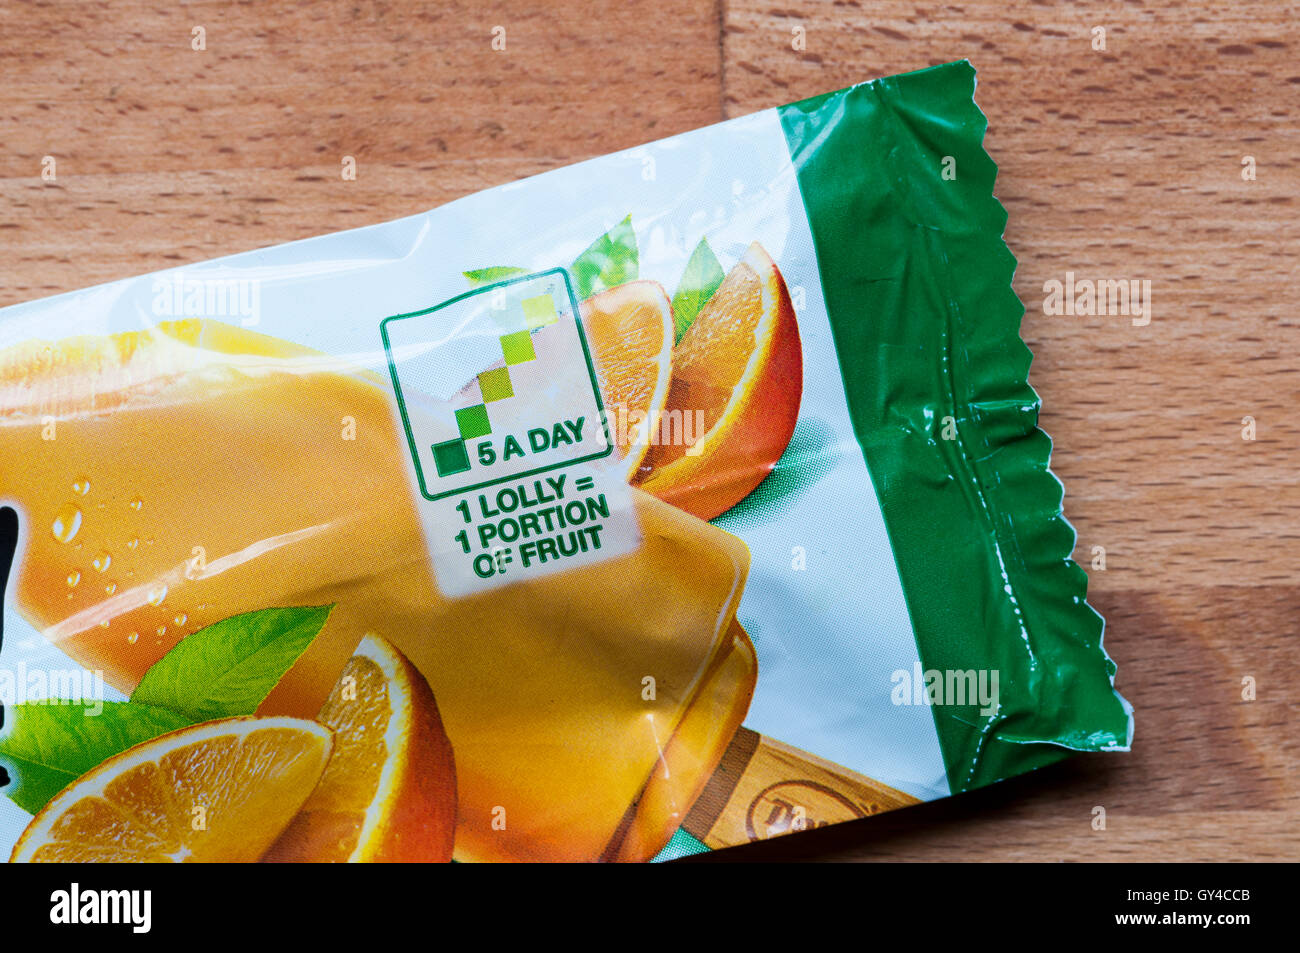 Wrapper von einer Del Monte orange Lolly sagt, dass 1 Lolly 1 Portion Obst entspricht und eines Ihrer 5 pro Tag ist. Stockfoto